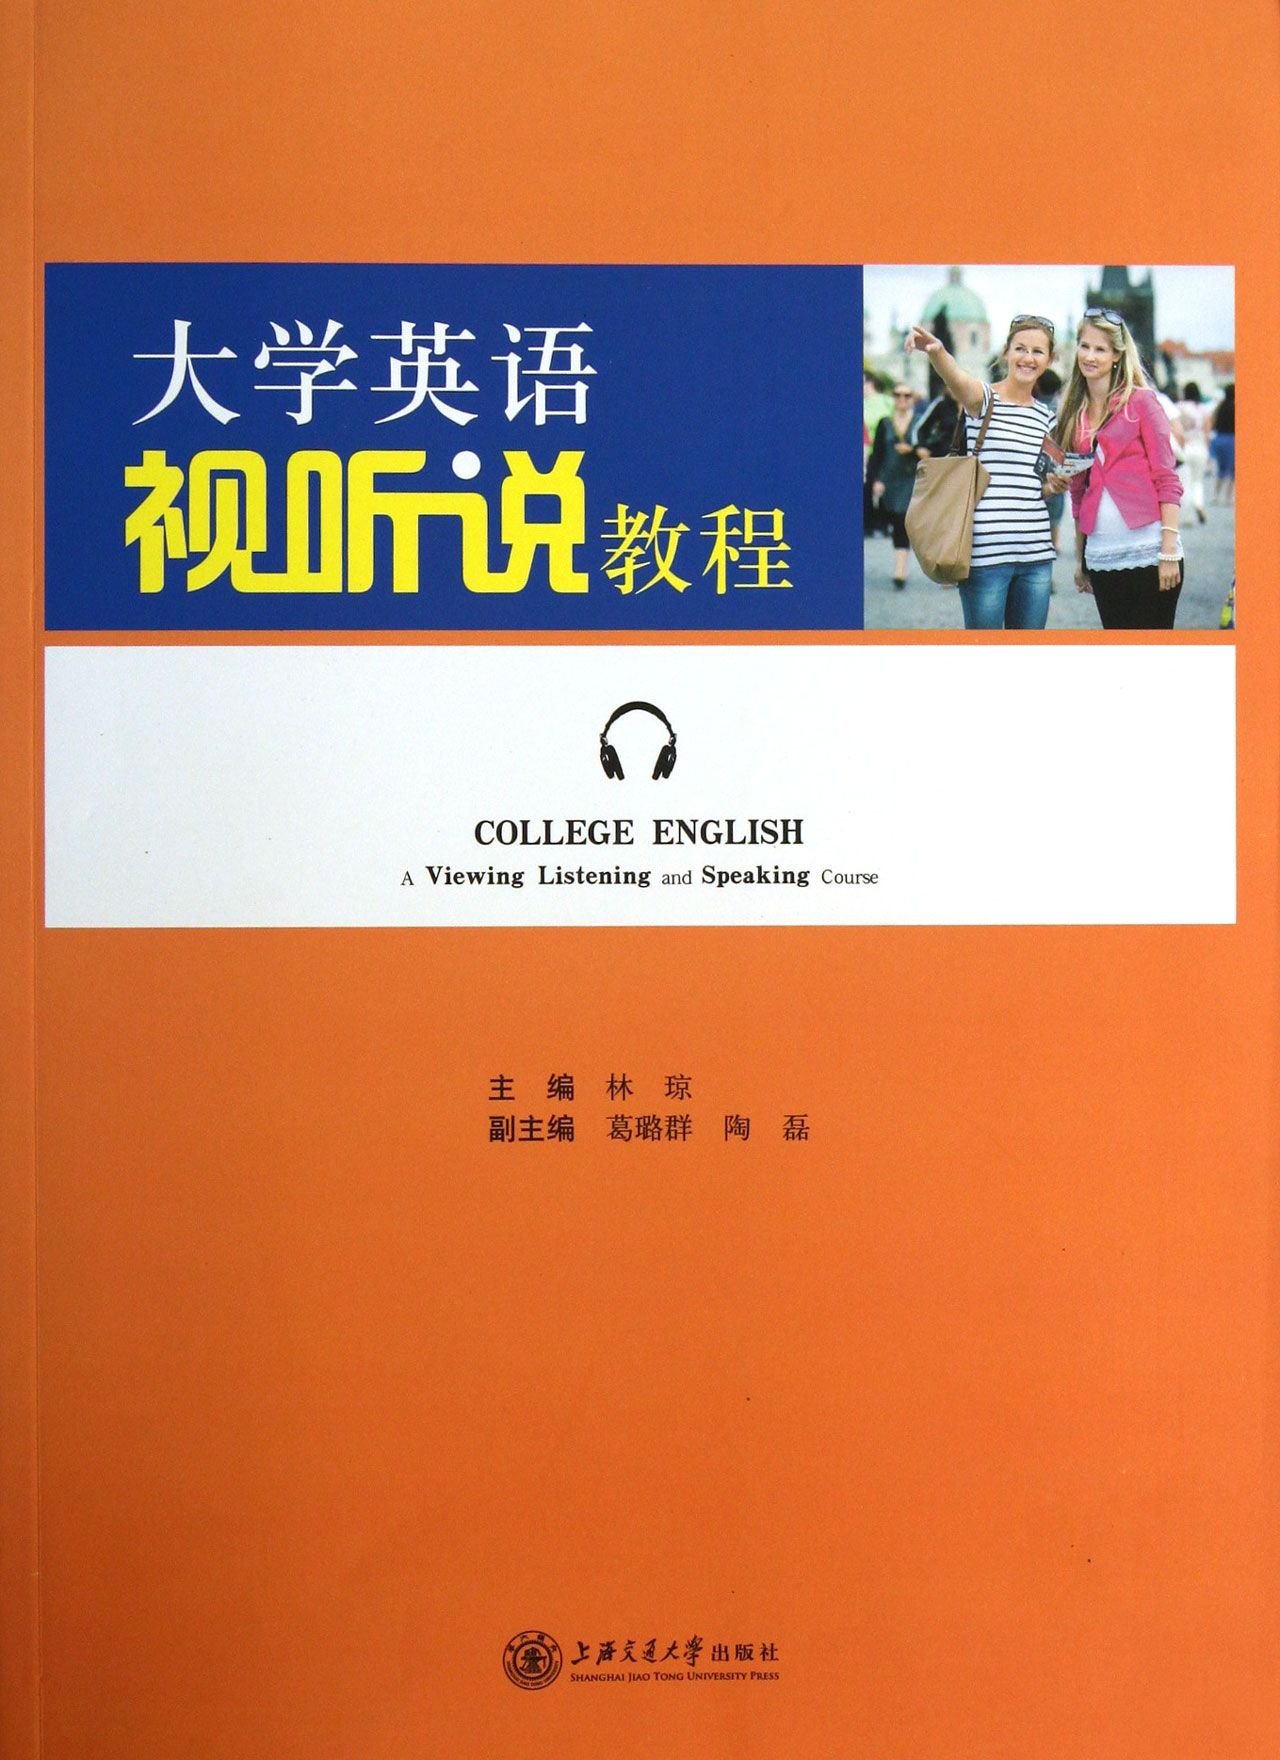 《大学英语视听说教程》,2012年,上海交通大学出版社出版,林琼 主编